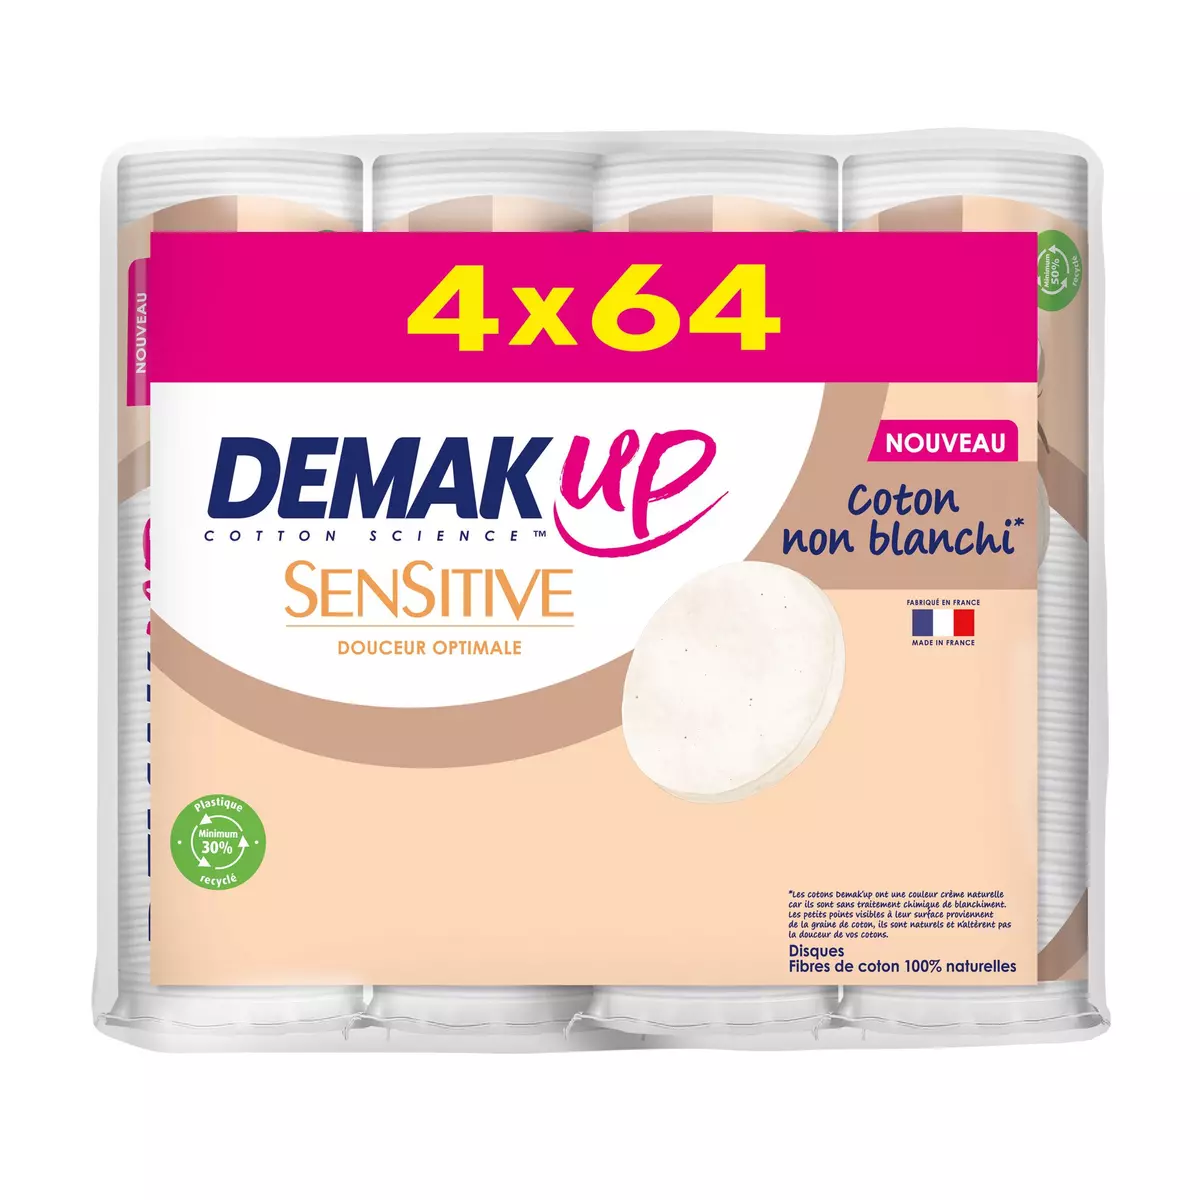 DEMAK'UP Disques coton sensitive 4x64 disques